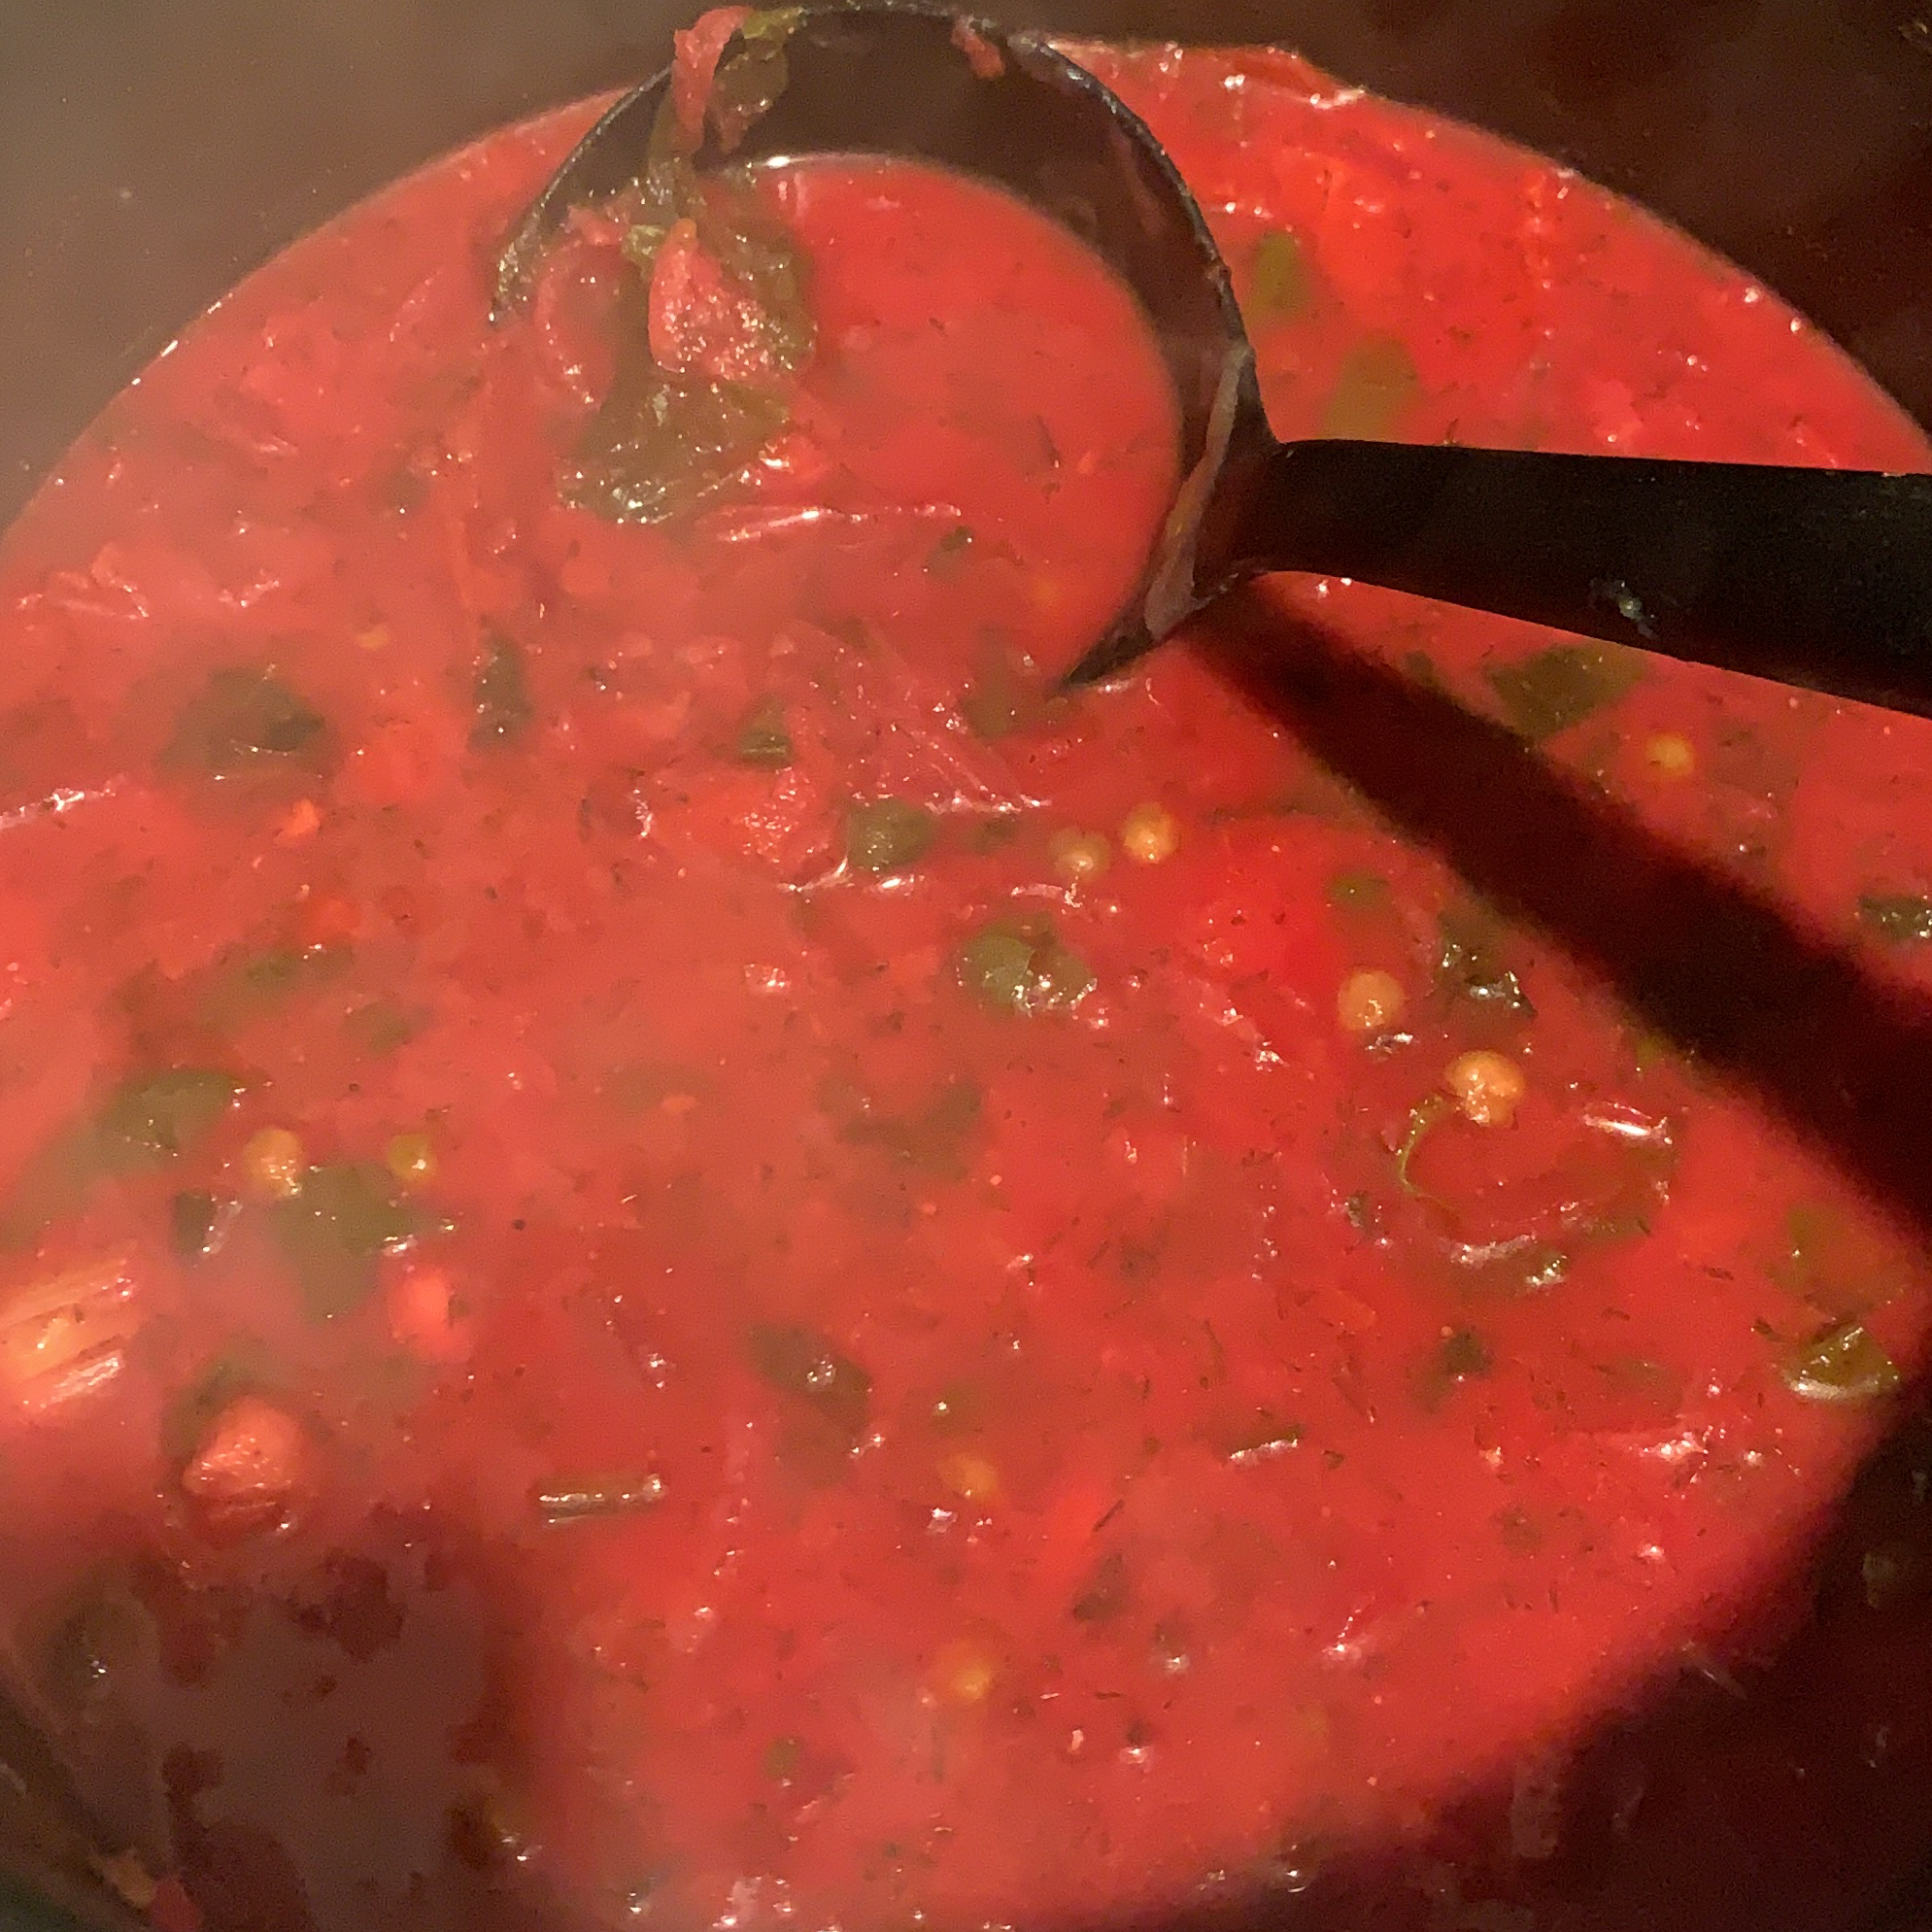 Ukrainian Red Borscht Soup 